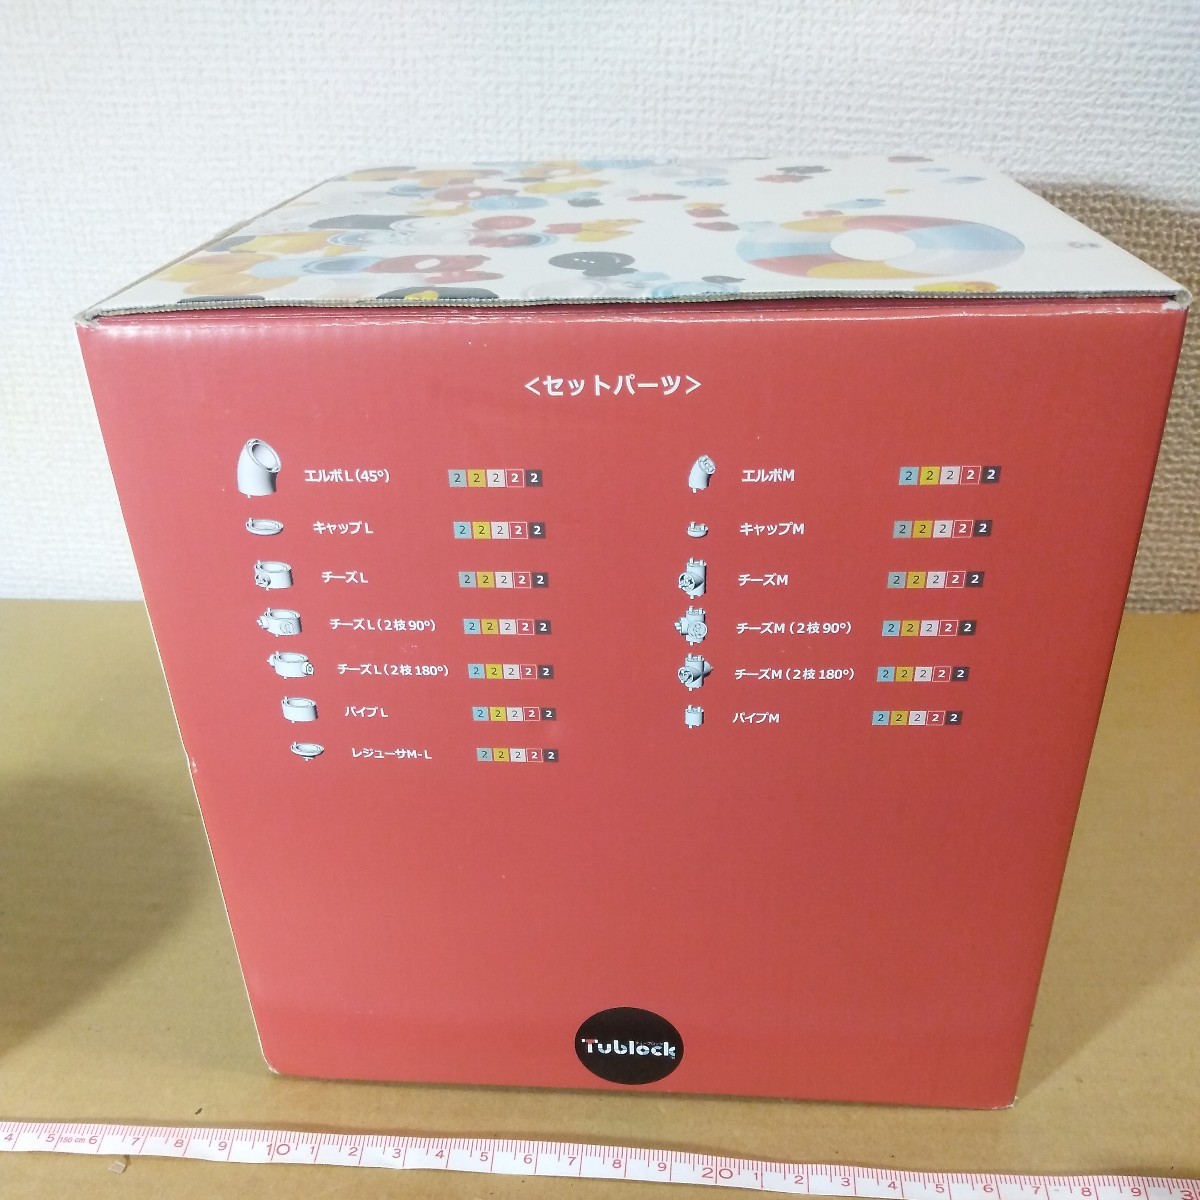 チューブロック Tublock 日本製 キッズセット 5色バージョン 未チェック 詳細不明 ジャンク扱い パイプつなぎブロック_画像4